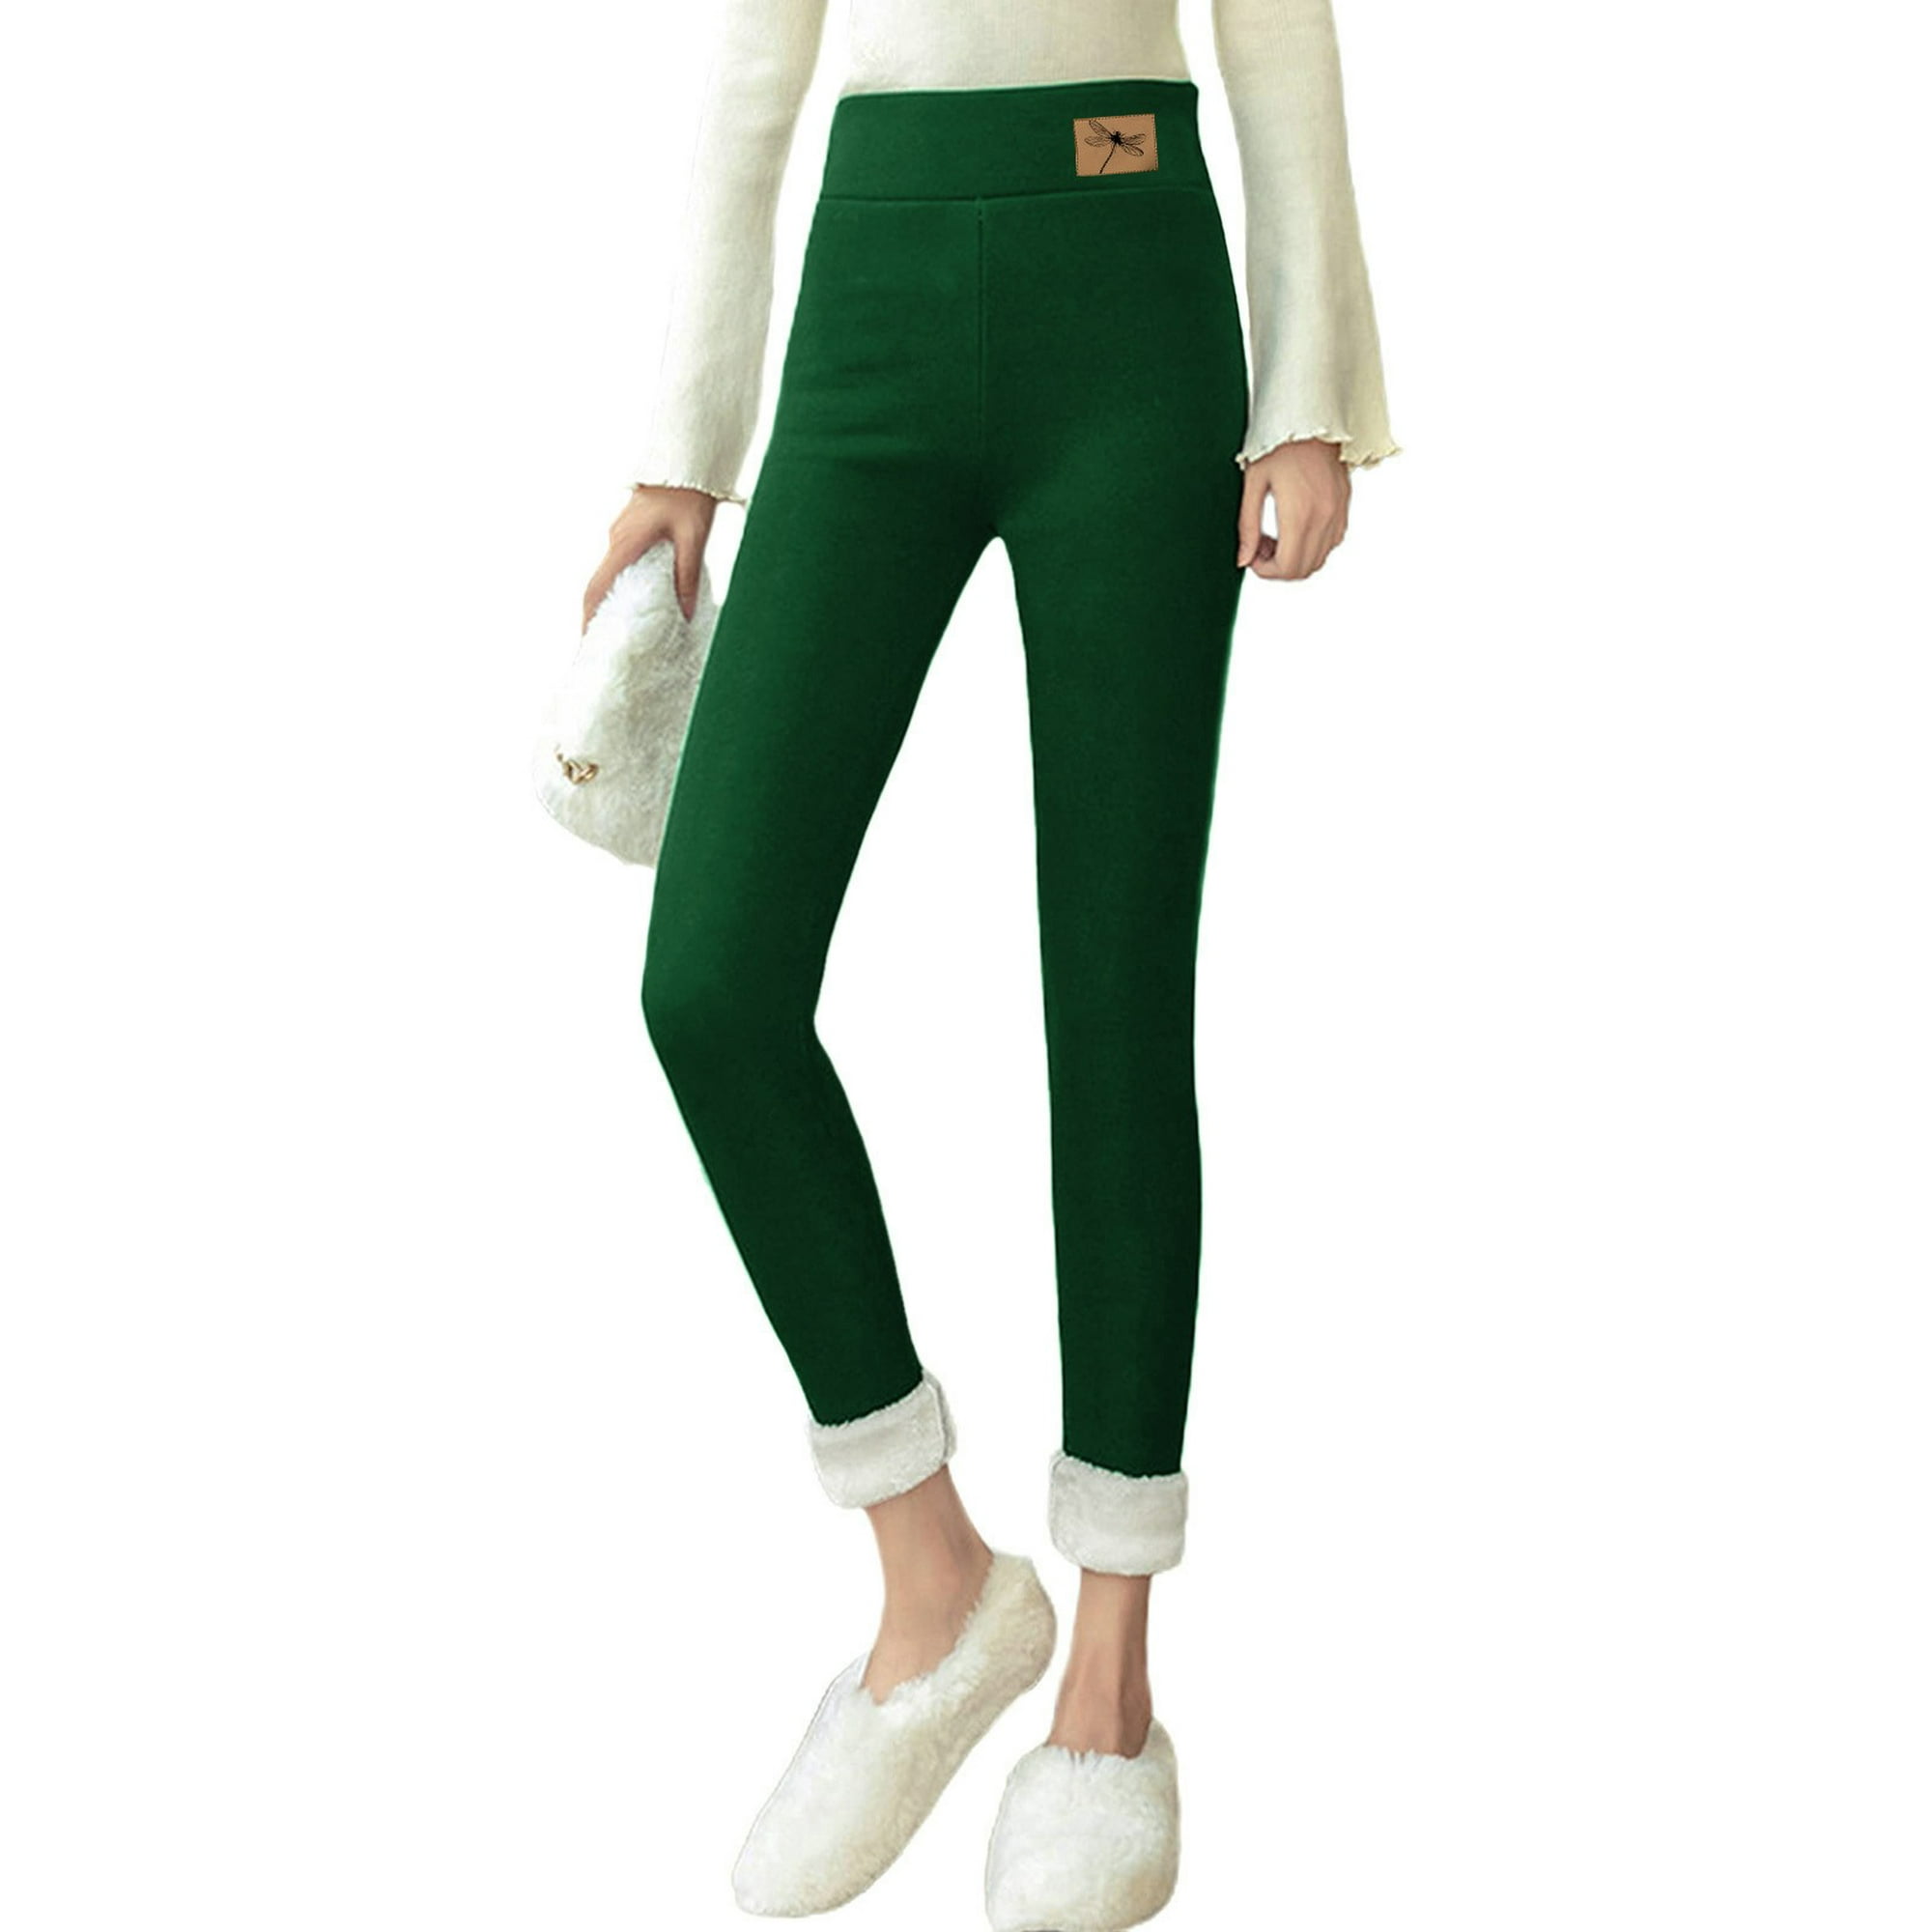 Gibobby Pantalones de invierno para mujer termicos Pantalones casuales de  polainas de cintura alta nuevos, modernos y cómodos para mujer(Blanco,M)